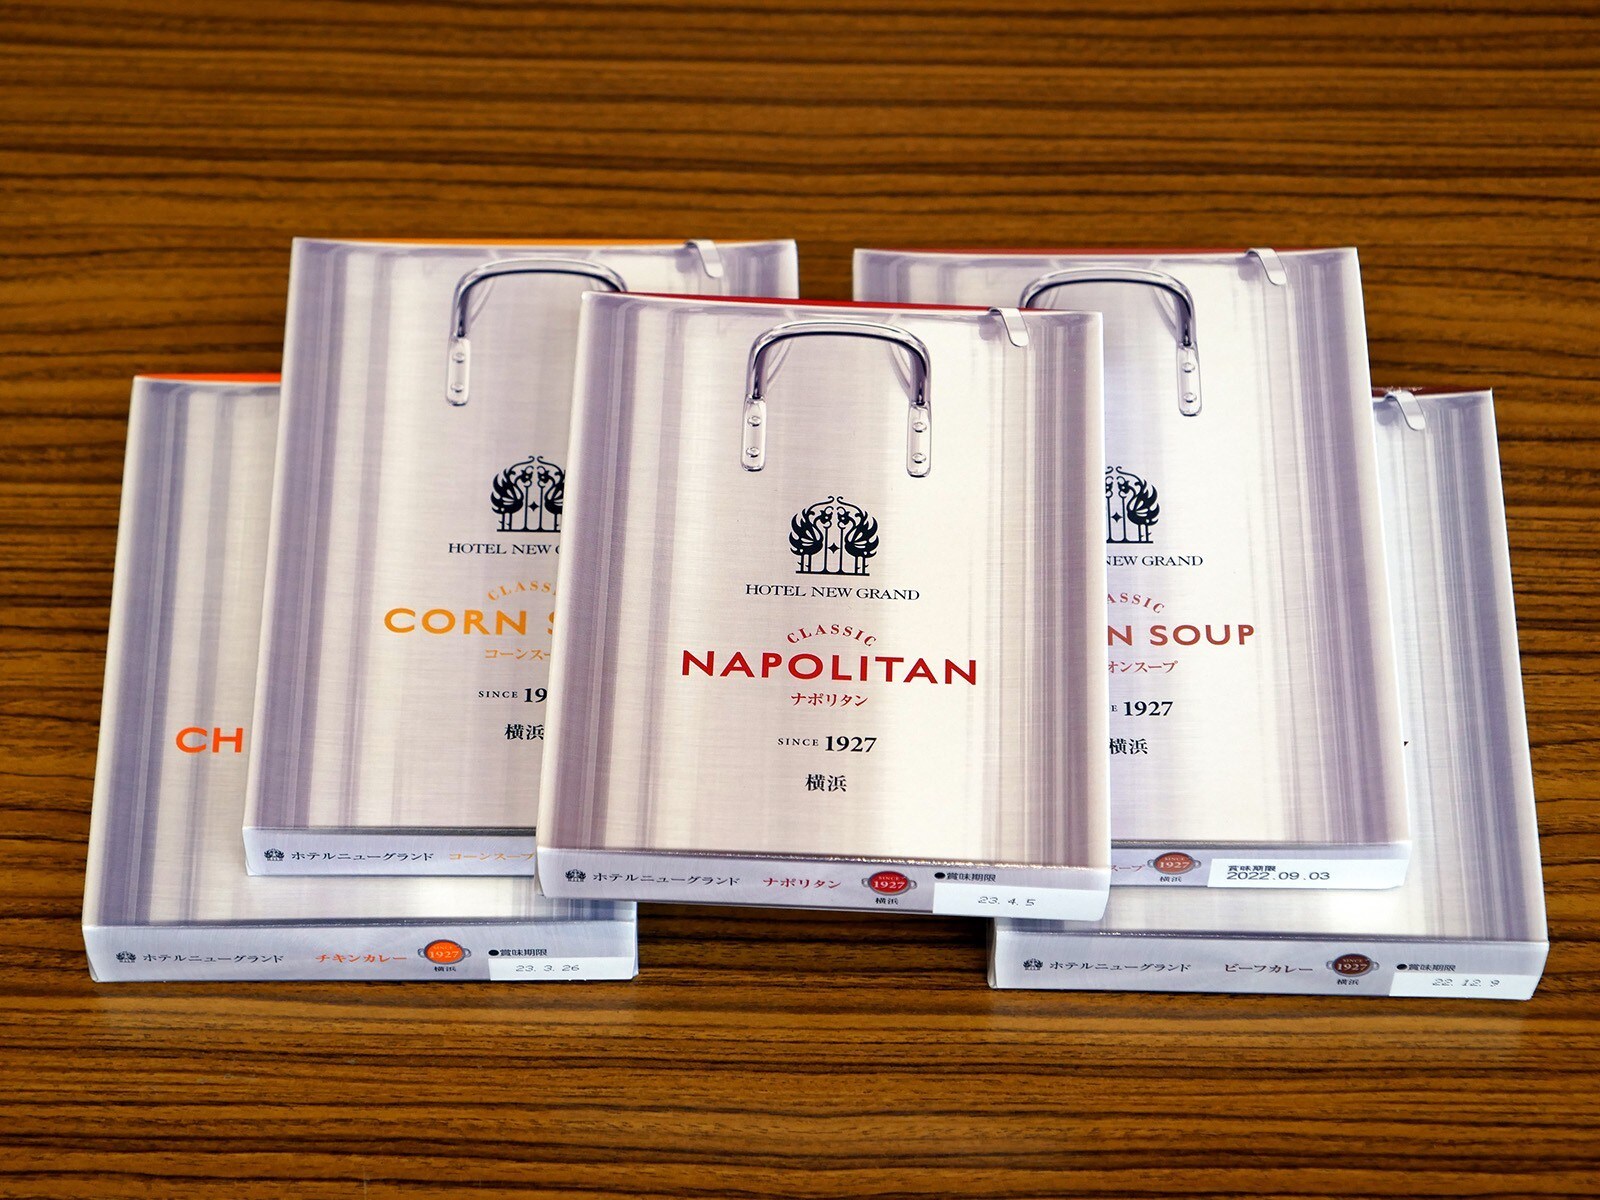 横浜のお土産ブランド「横濱001」 横浜の魅力を発信するオンリーワンの181商品が認定